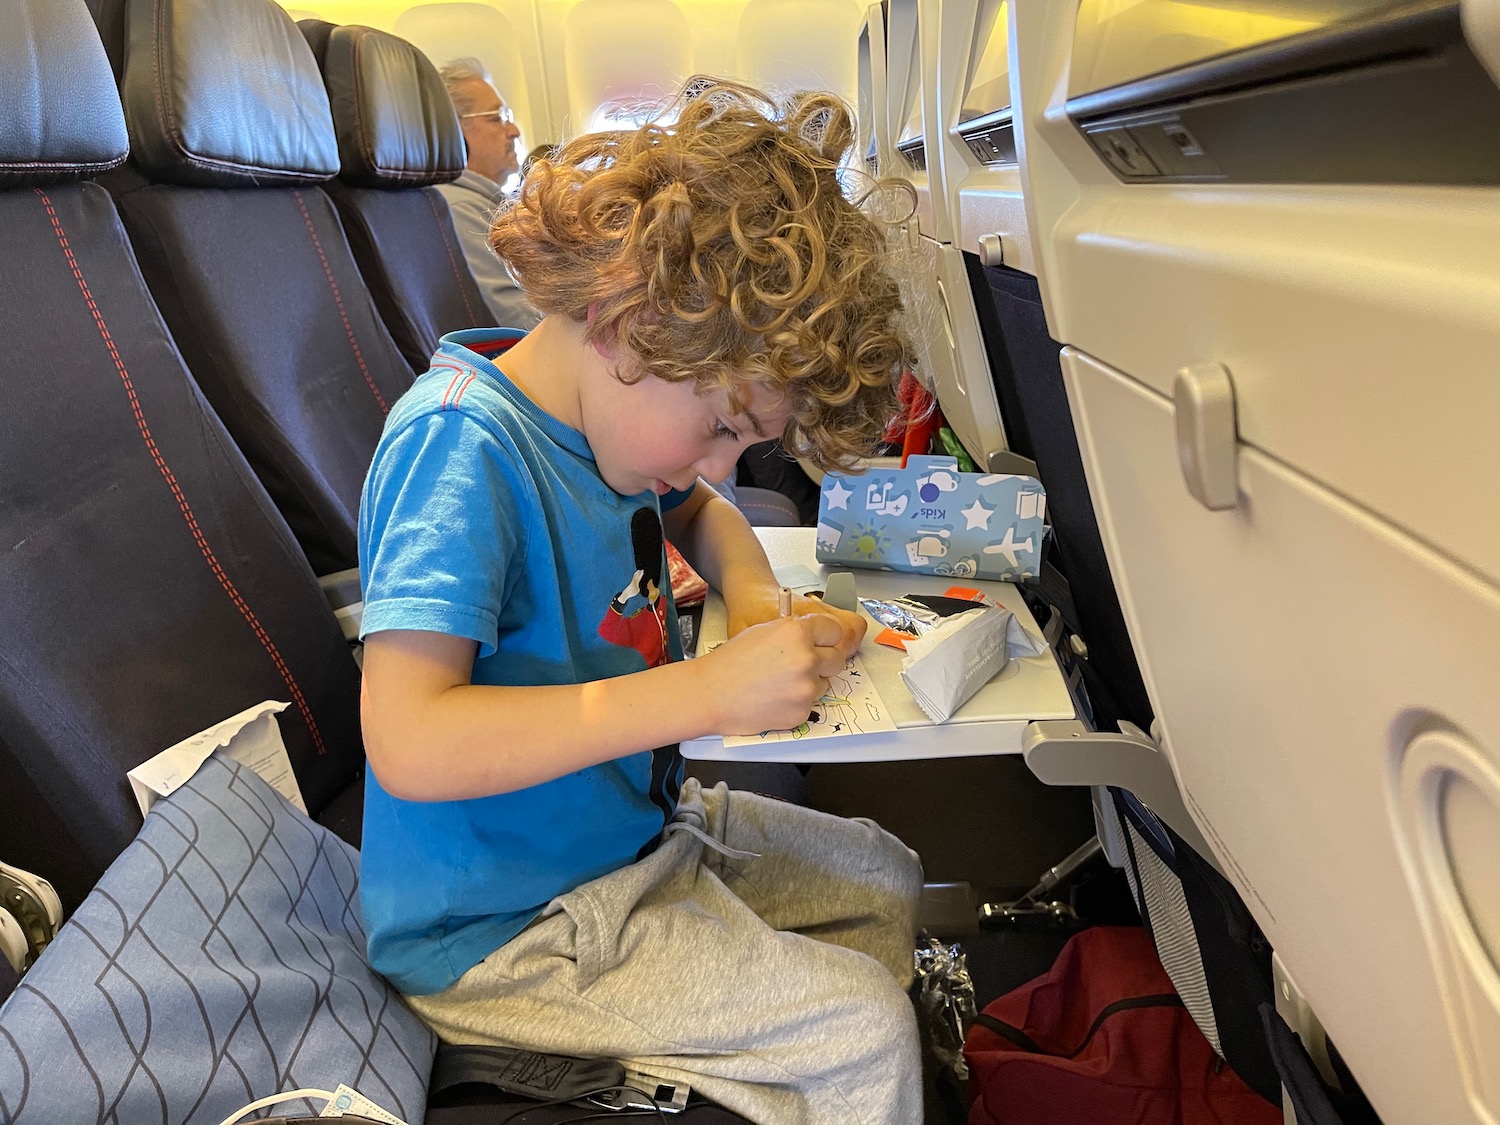 a boy sitting on an airplane